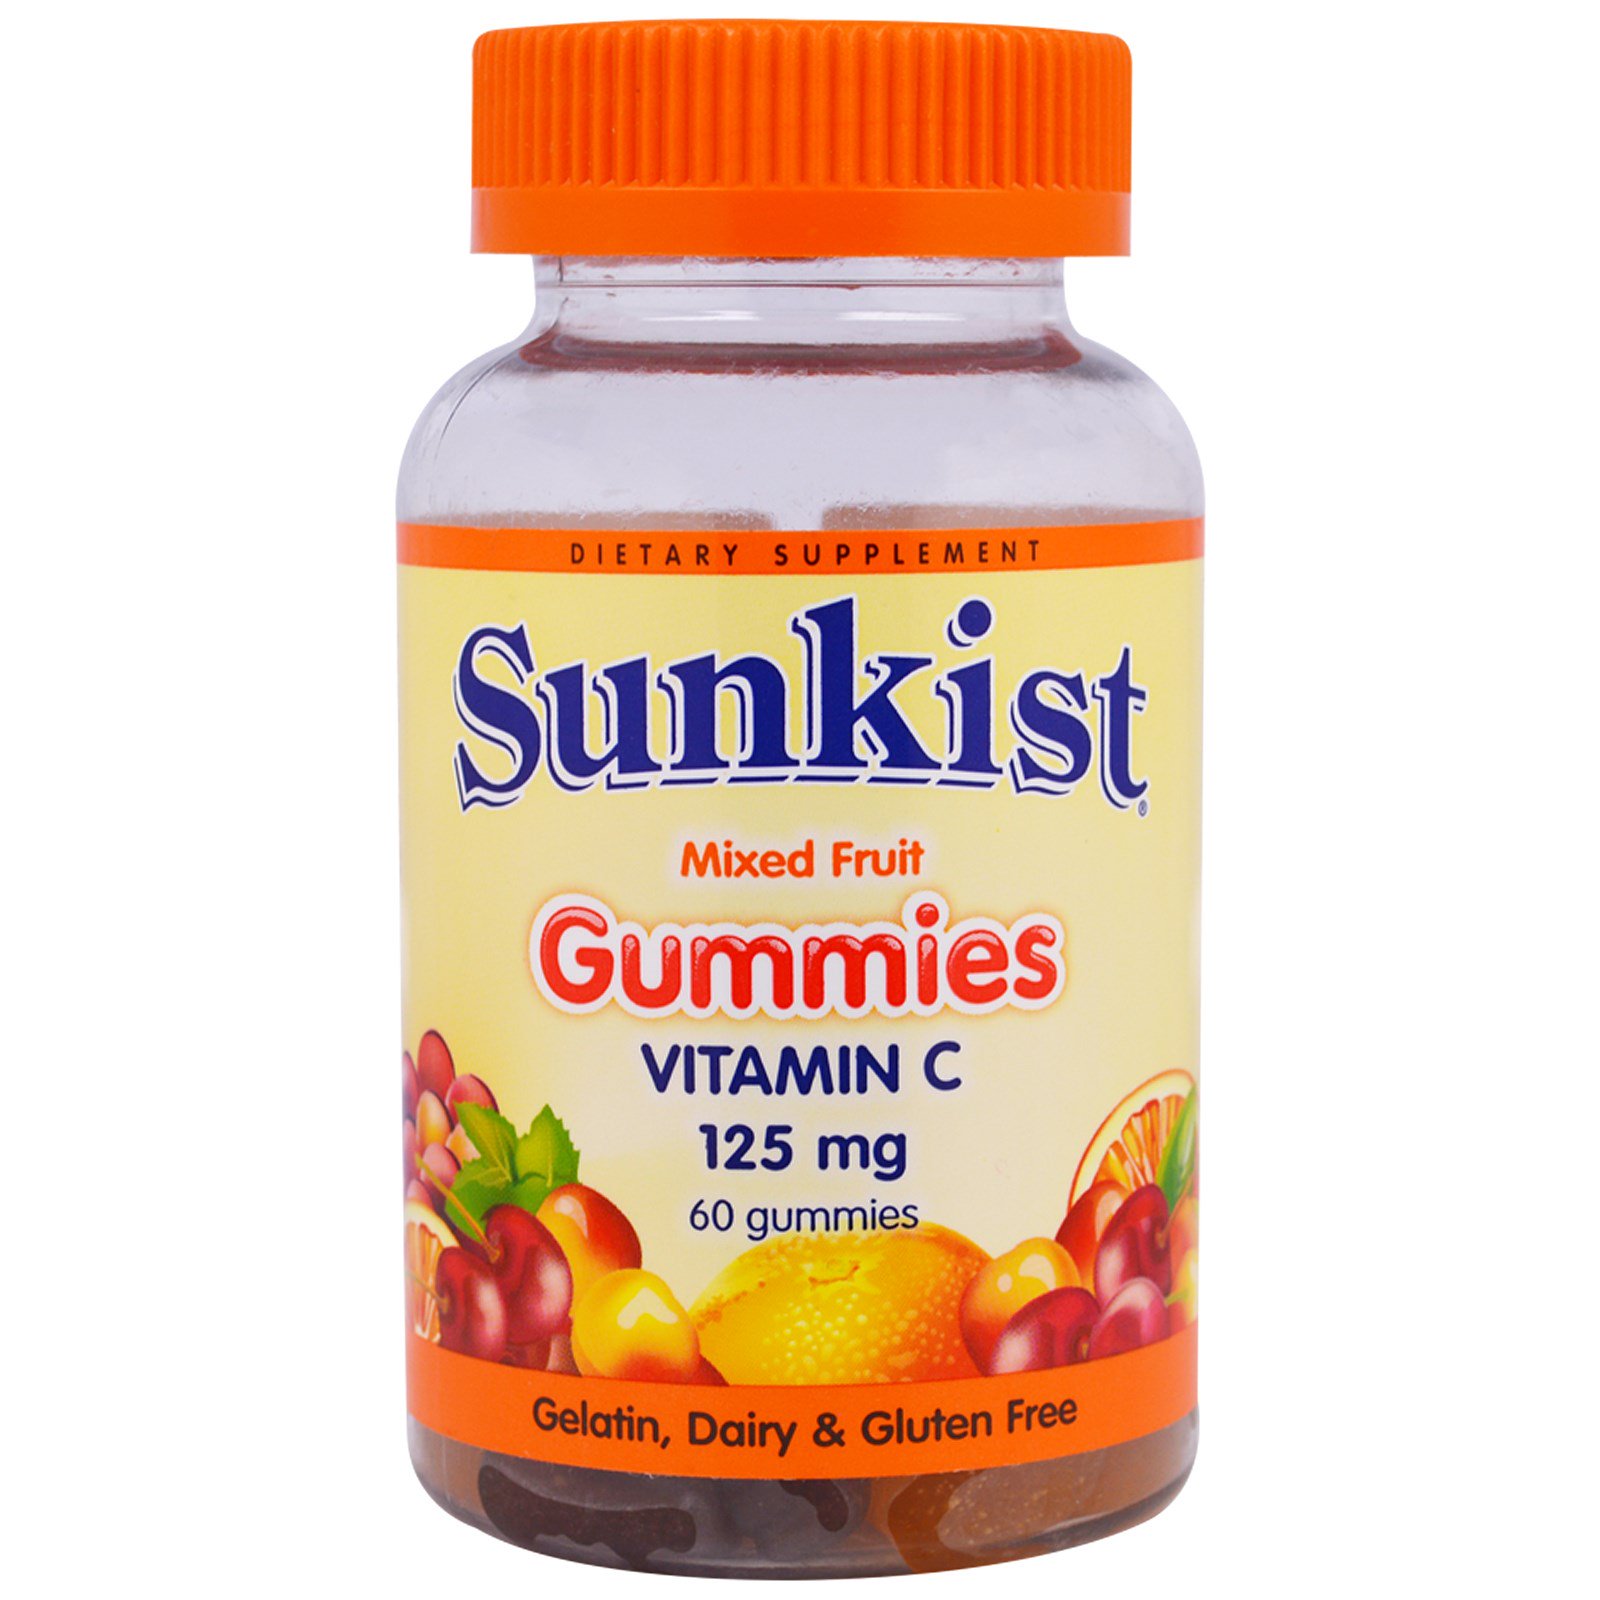 Жевательные мультивитамины для детей. Polzaboom Vitamin d3 Kids Gummies (витамин d3 для детей) пастилки жевательные. Витамины желе. Желейные витамины для взрослых. Индийские детские витамины.